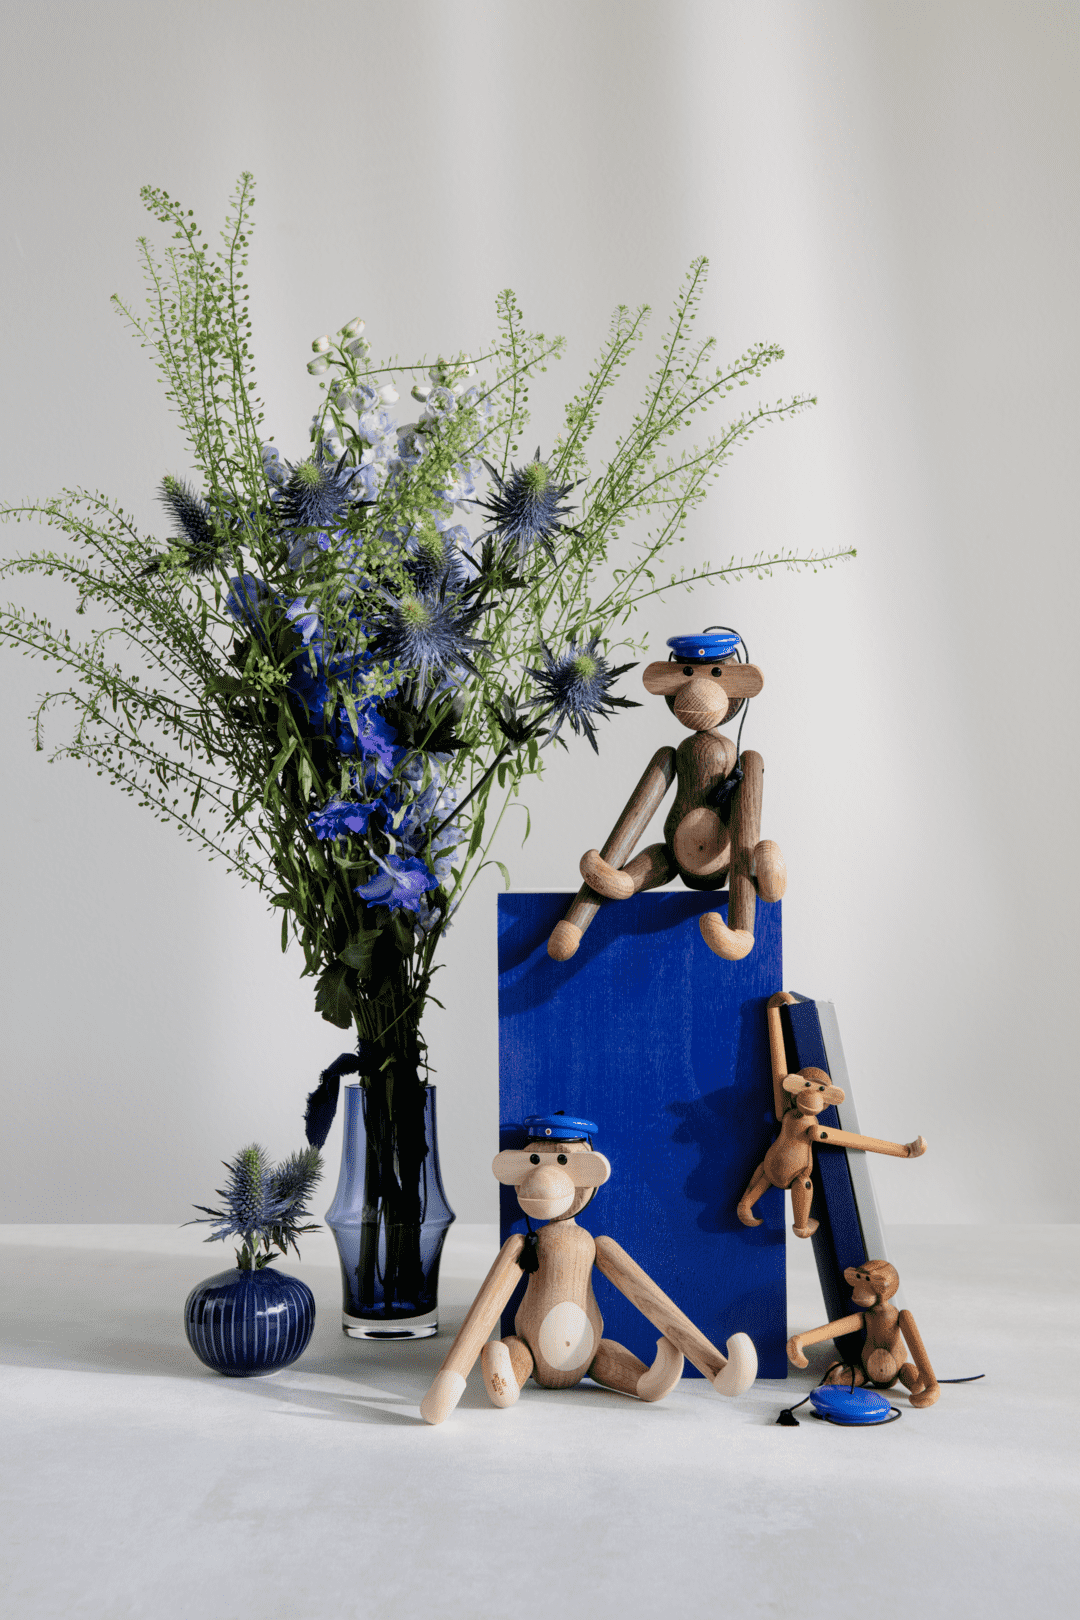 Kay Bojesen wooden Figure Hat Small monkey Russelue Blue